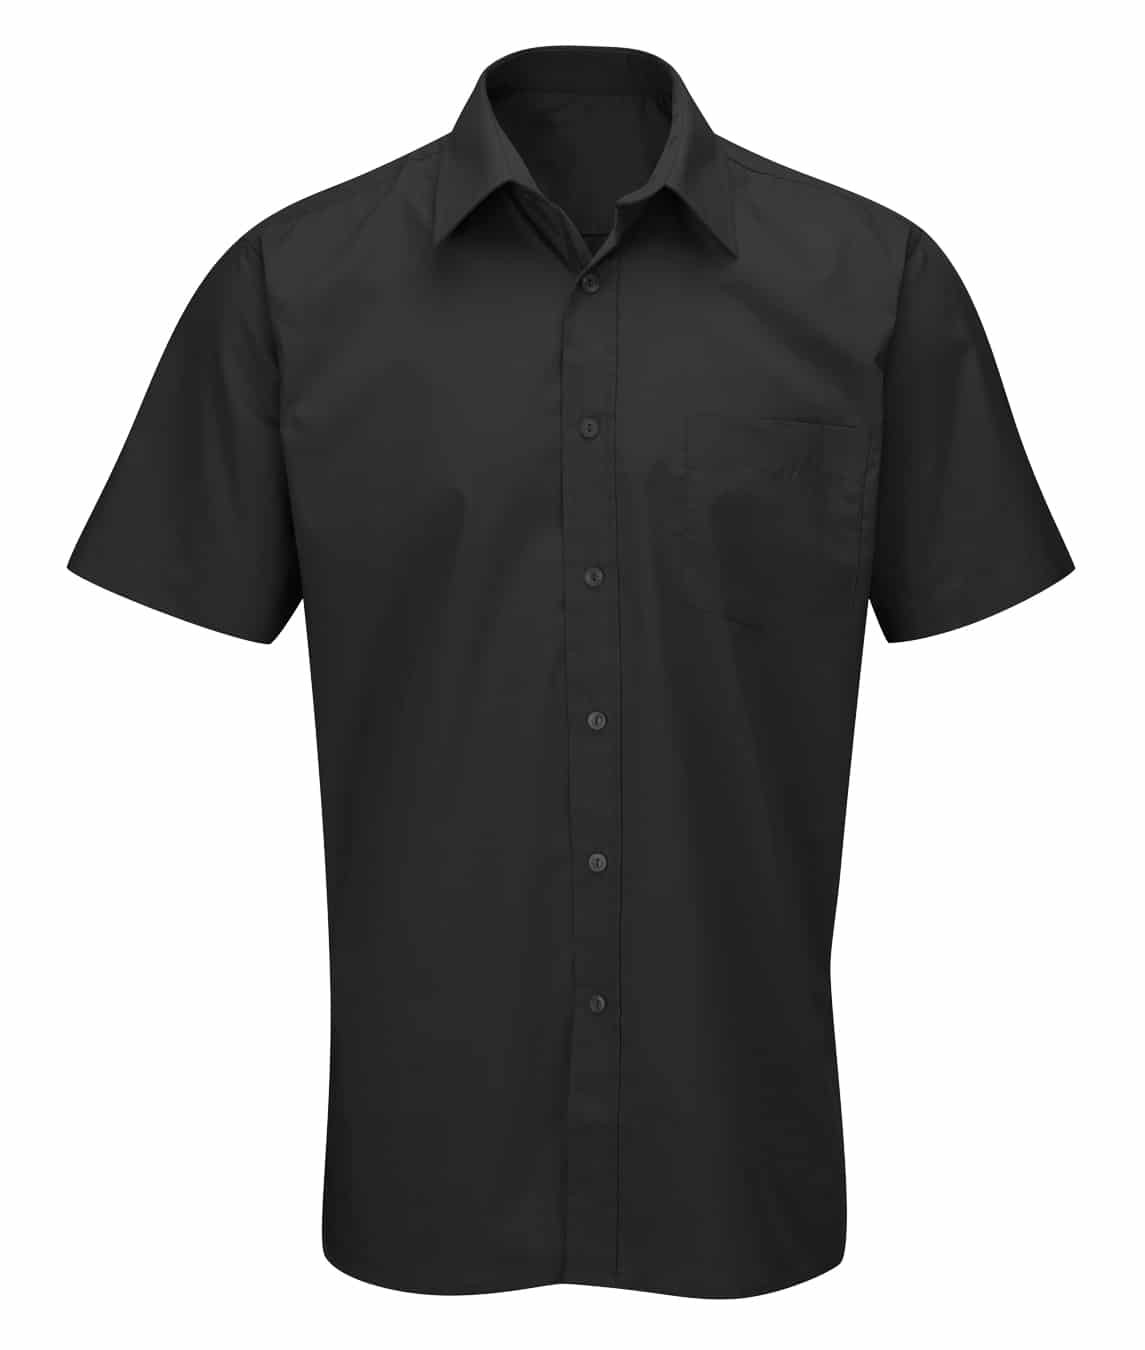 Men's Deluxe: Short Sleeve Shirt